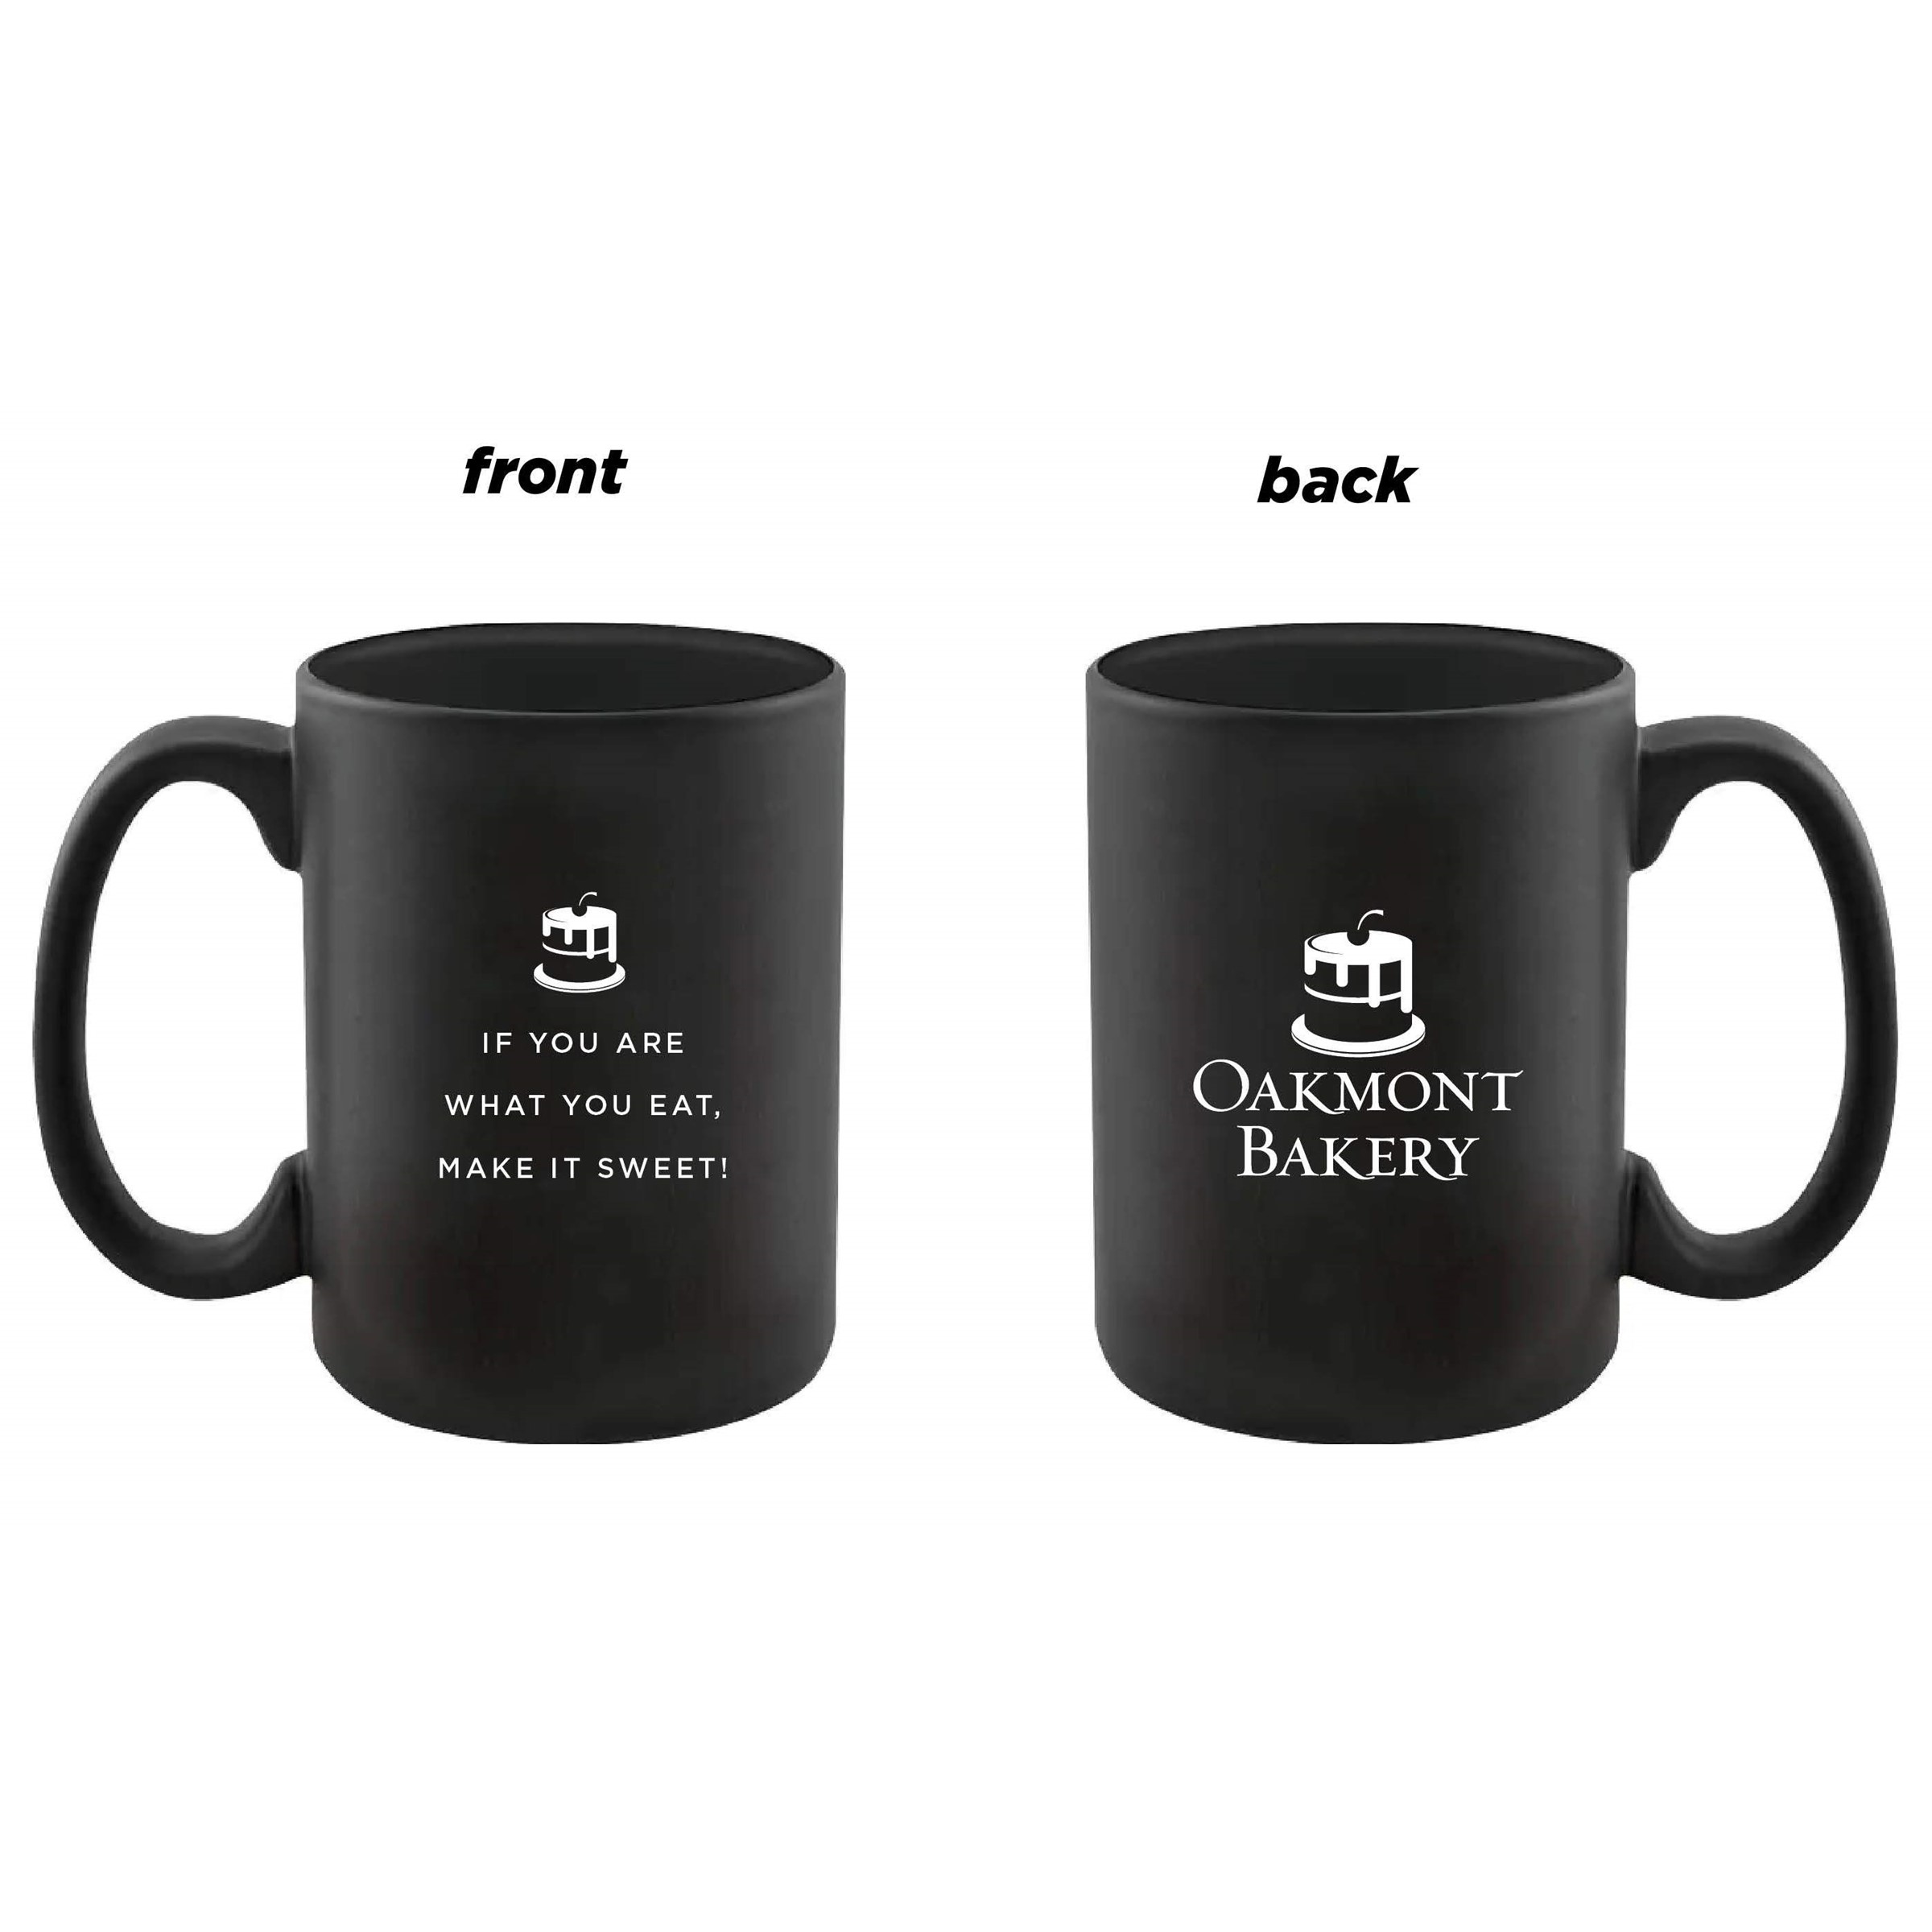 https://oakmontbakery.com/wp-content/uploads/2021/11/Oakmont-Bakery-Mugs.jpg